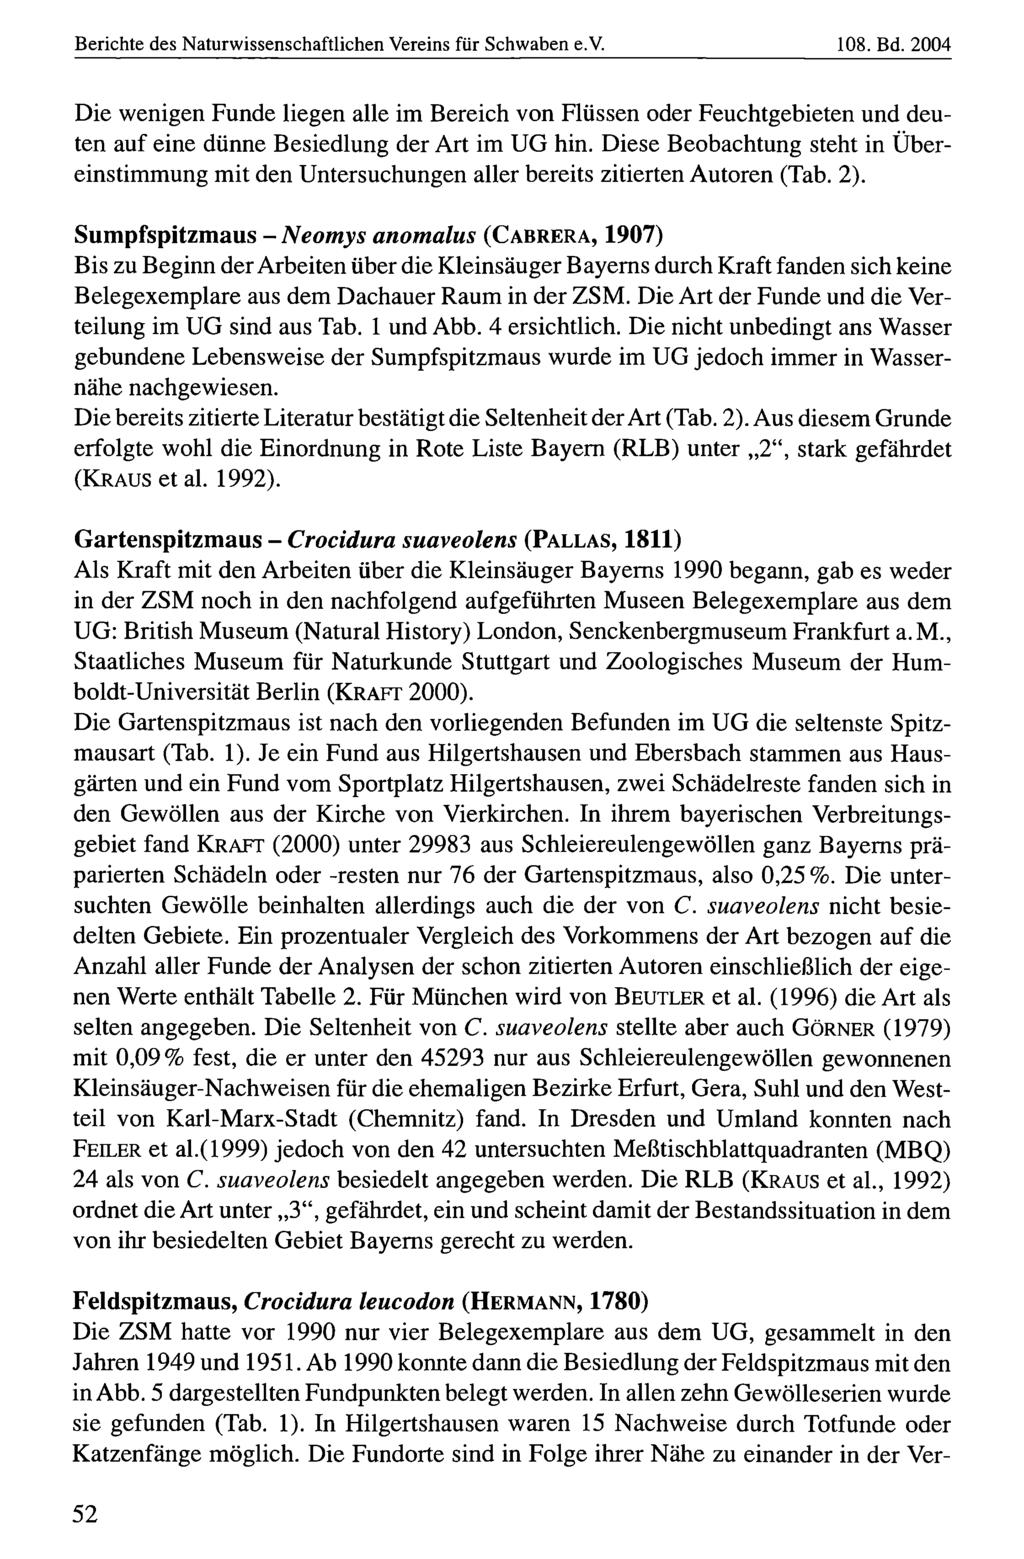 Berichte des Naturwissenschaftlichen Naturwissenschaftlicher Vereins für für Schwaben, download e.v. unter www.biologiezentrum.at 108. Bd.